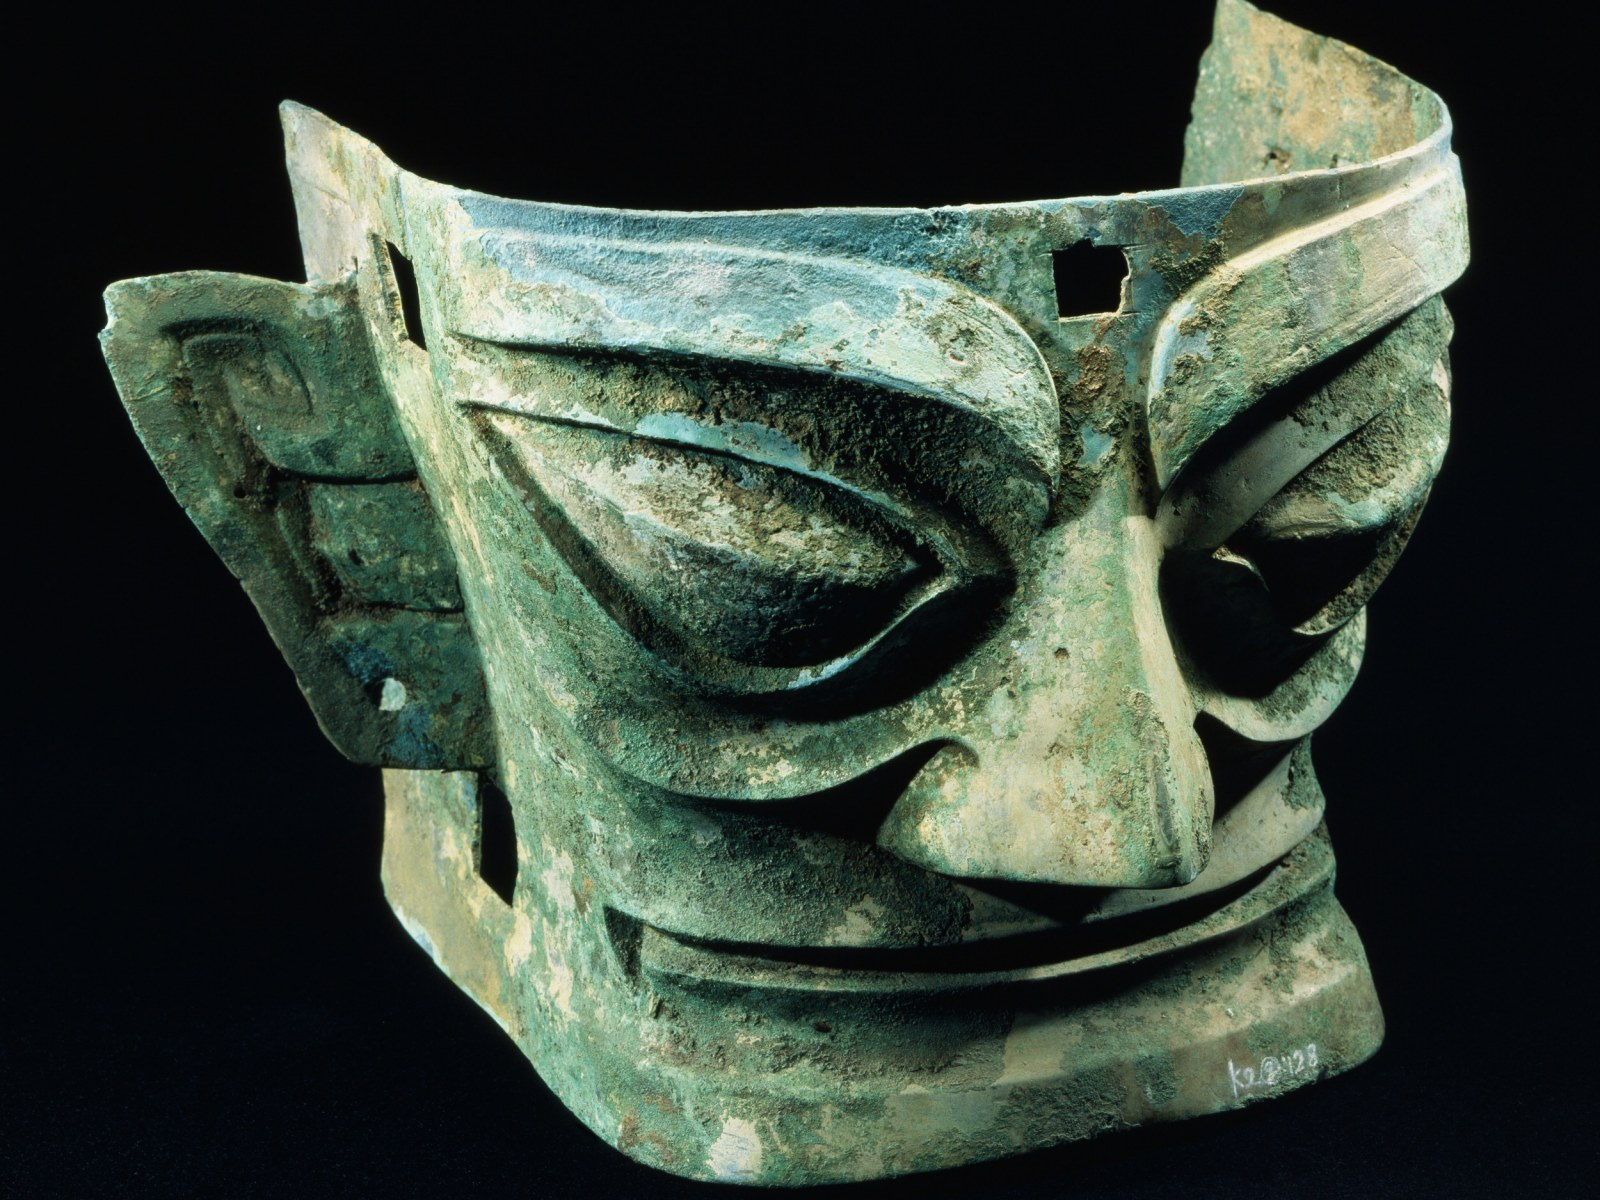 Một chiếc mặt nạ bằng vàng có từ thời nhà Thương cách đây 3.000 năm vừa được khai quật ở Trung Quốc - Ảnh: Martha Avery/Getty